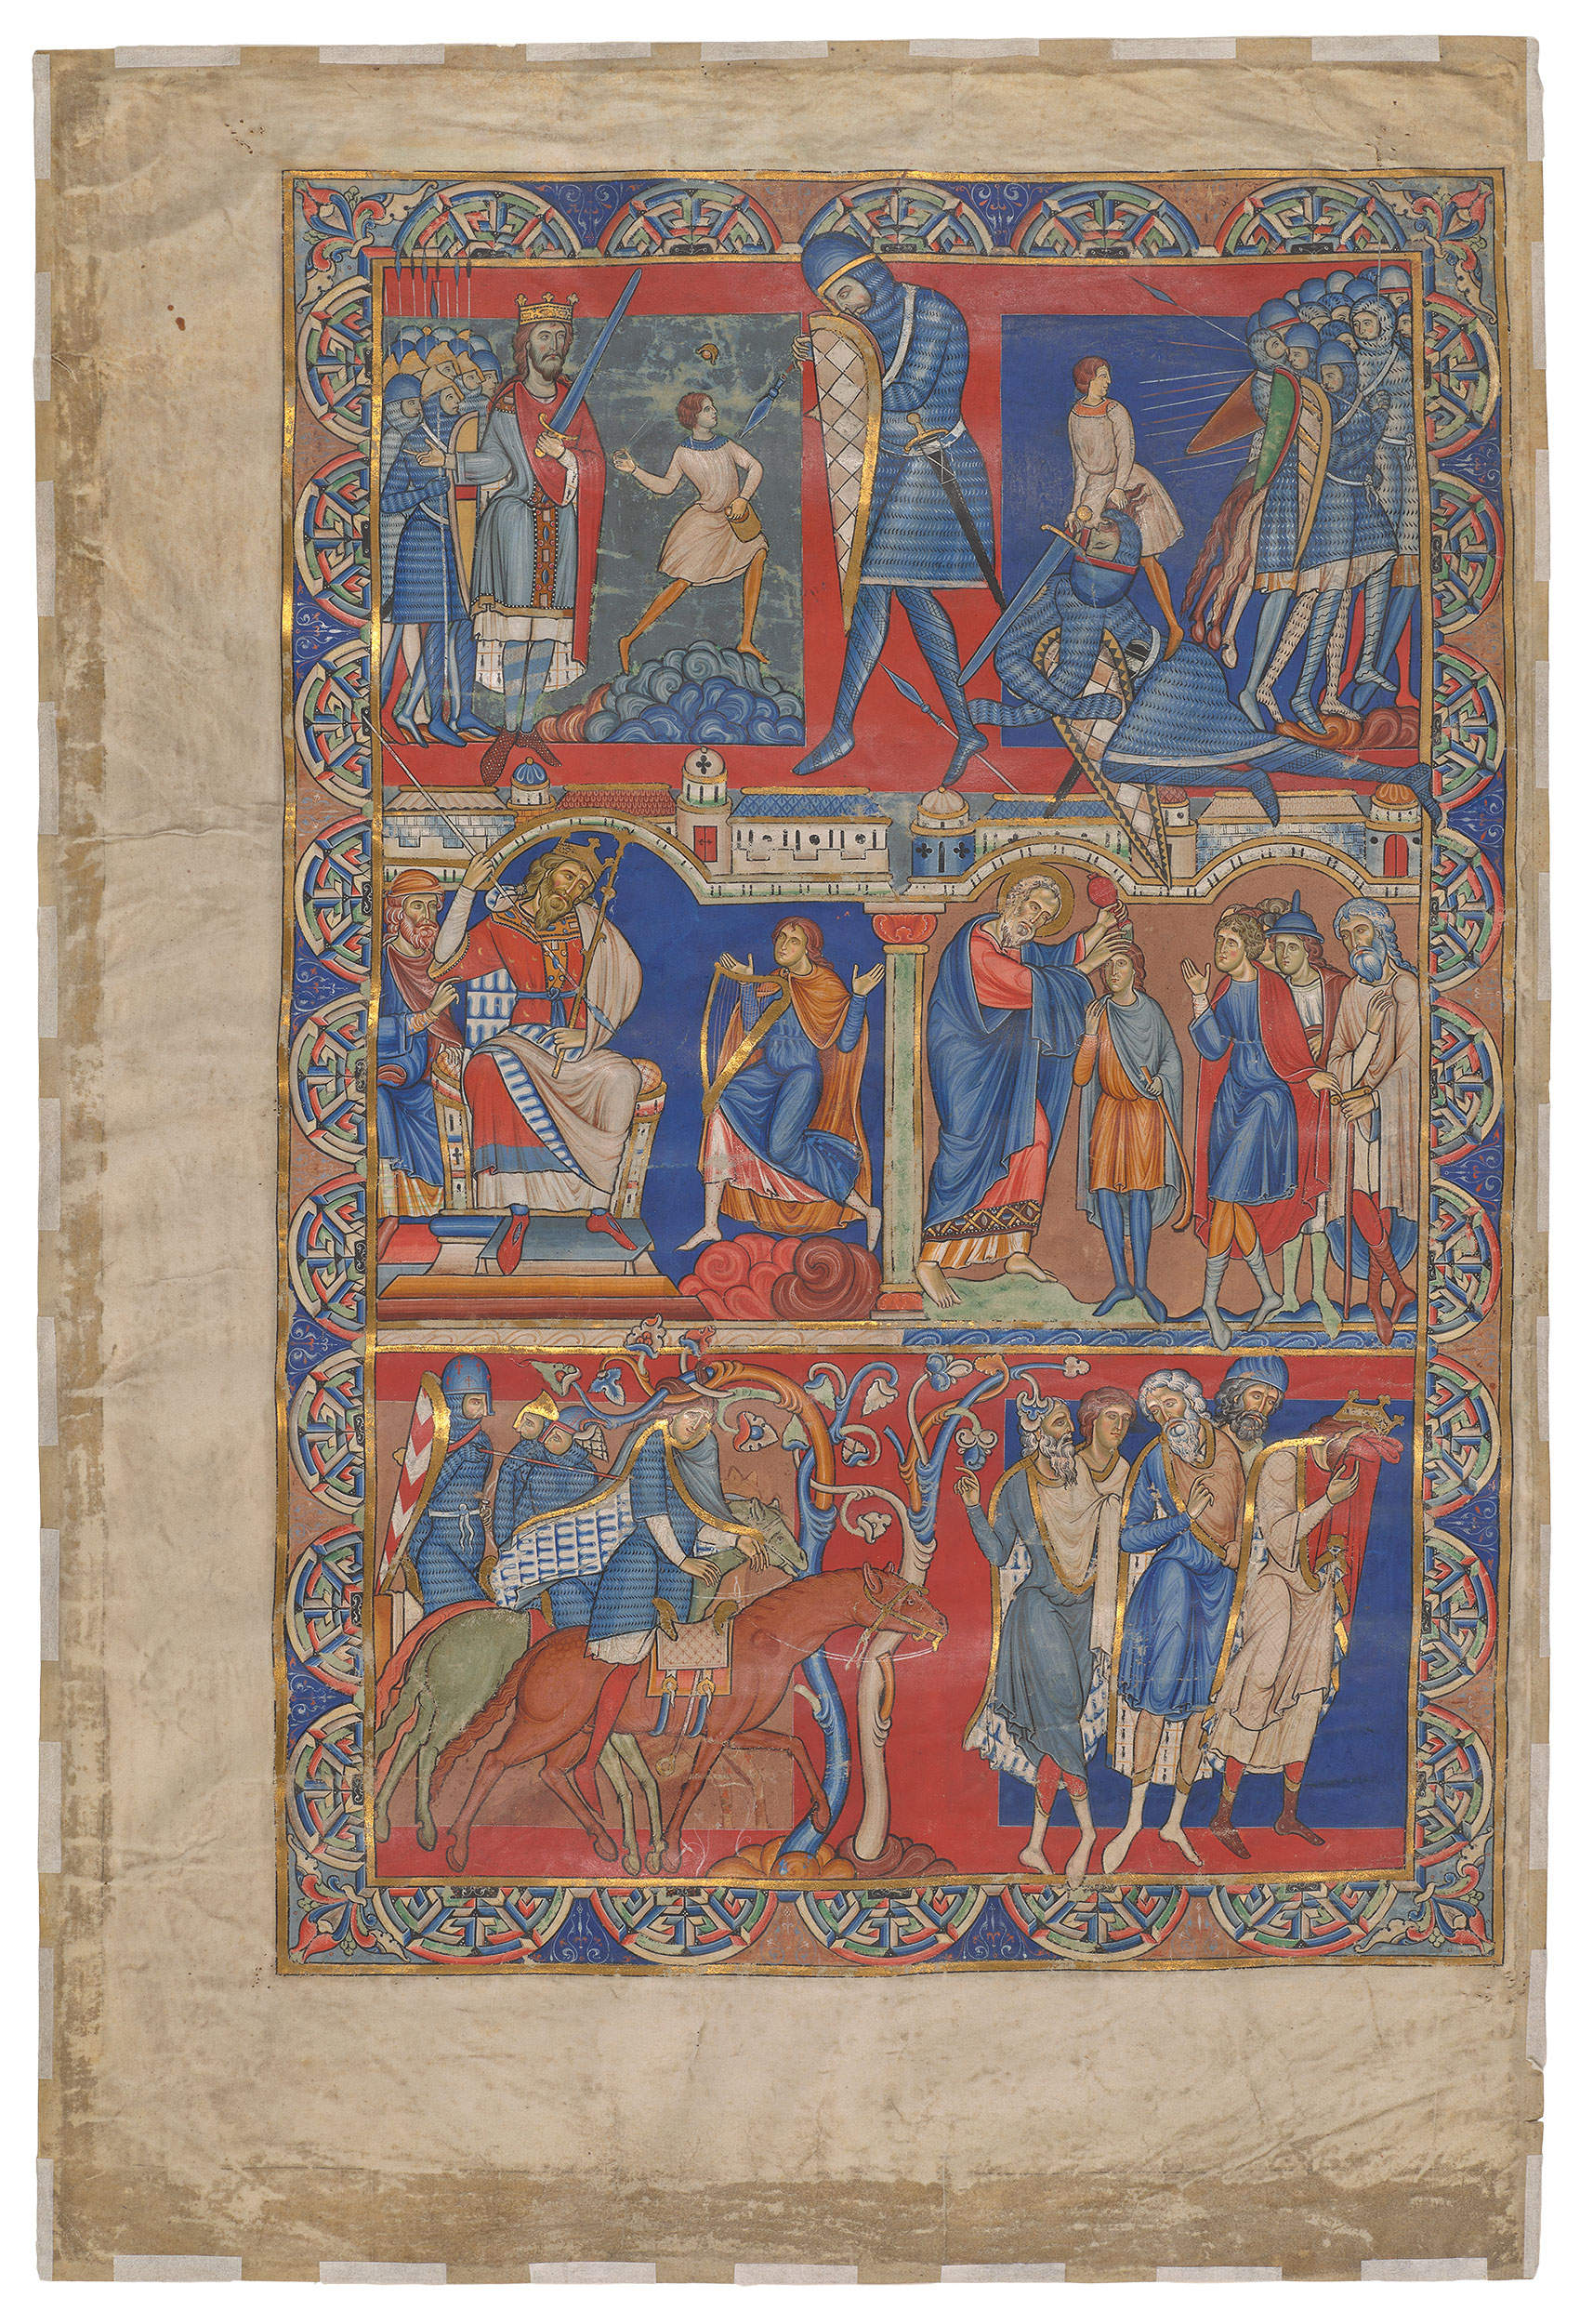 Книга Самуеля Сингл-Ліф, Вінчестерська Біблія by Unknown Artist - близько 1160-1180 - 580 x 390 мм 